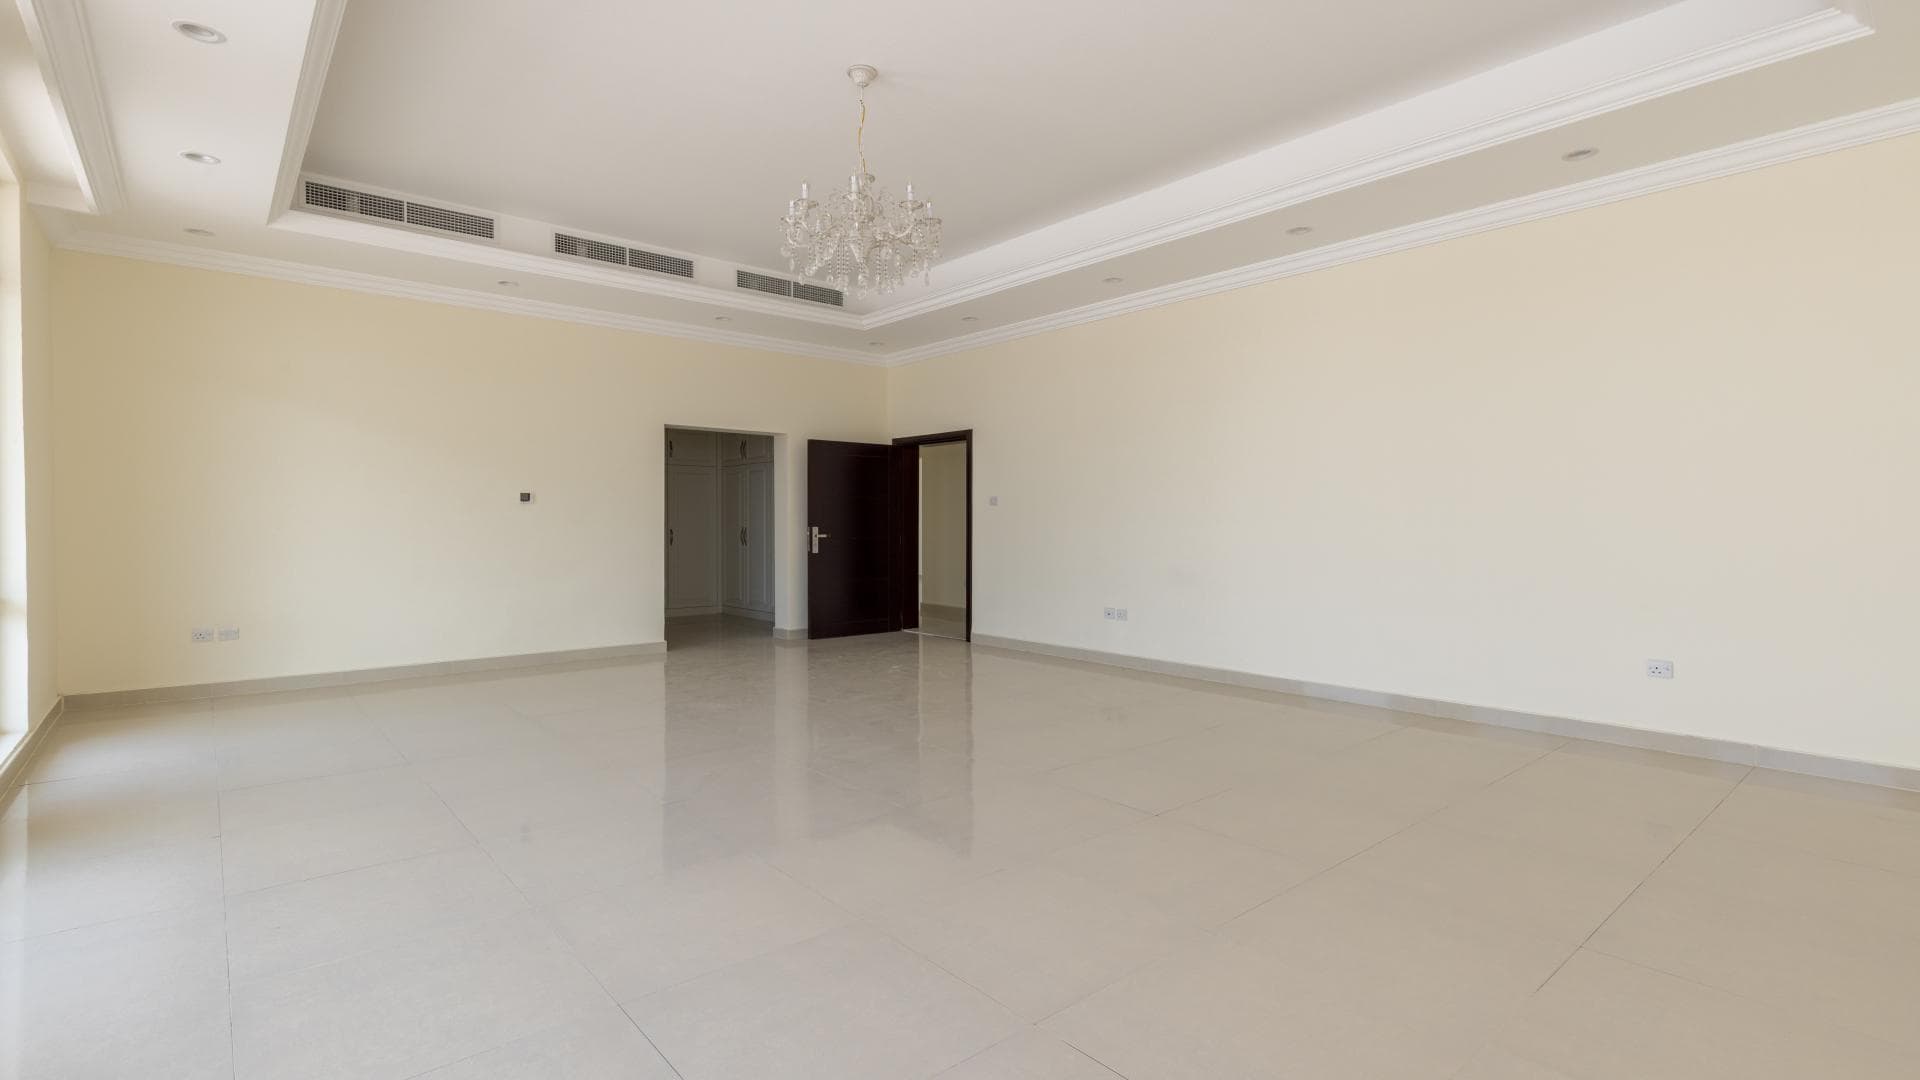 10 Bedroom Villa For Rent Jumeirah 2 Lp14748 103b4db09aca8d00.jpg